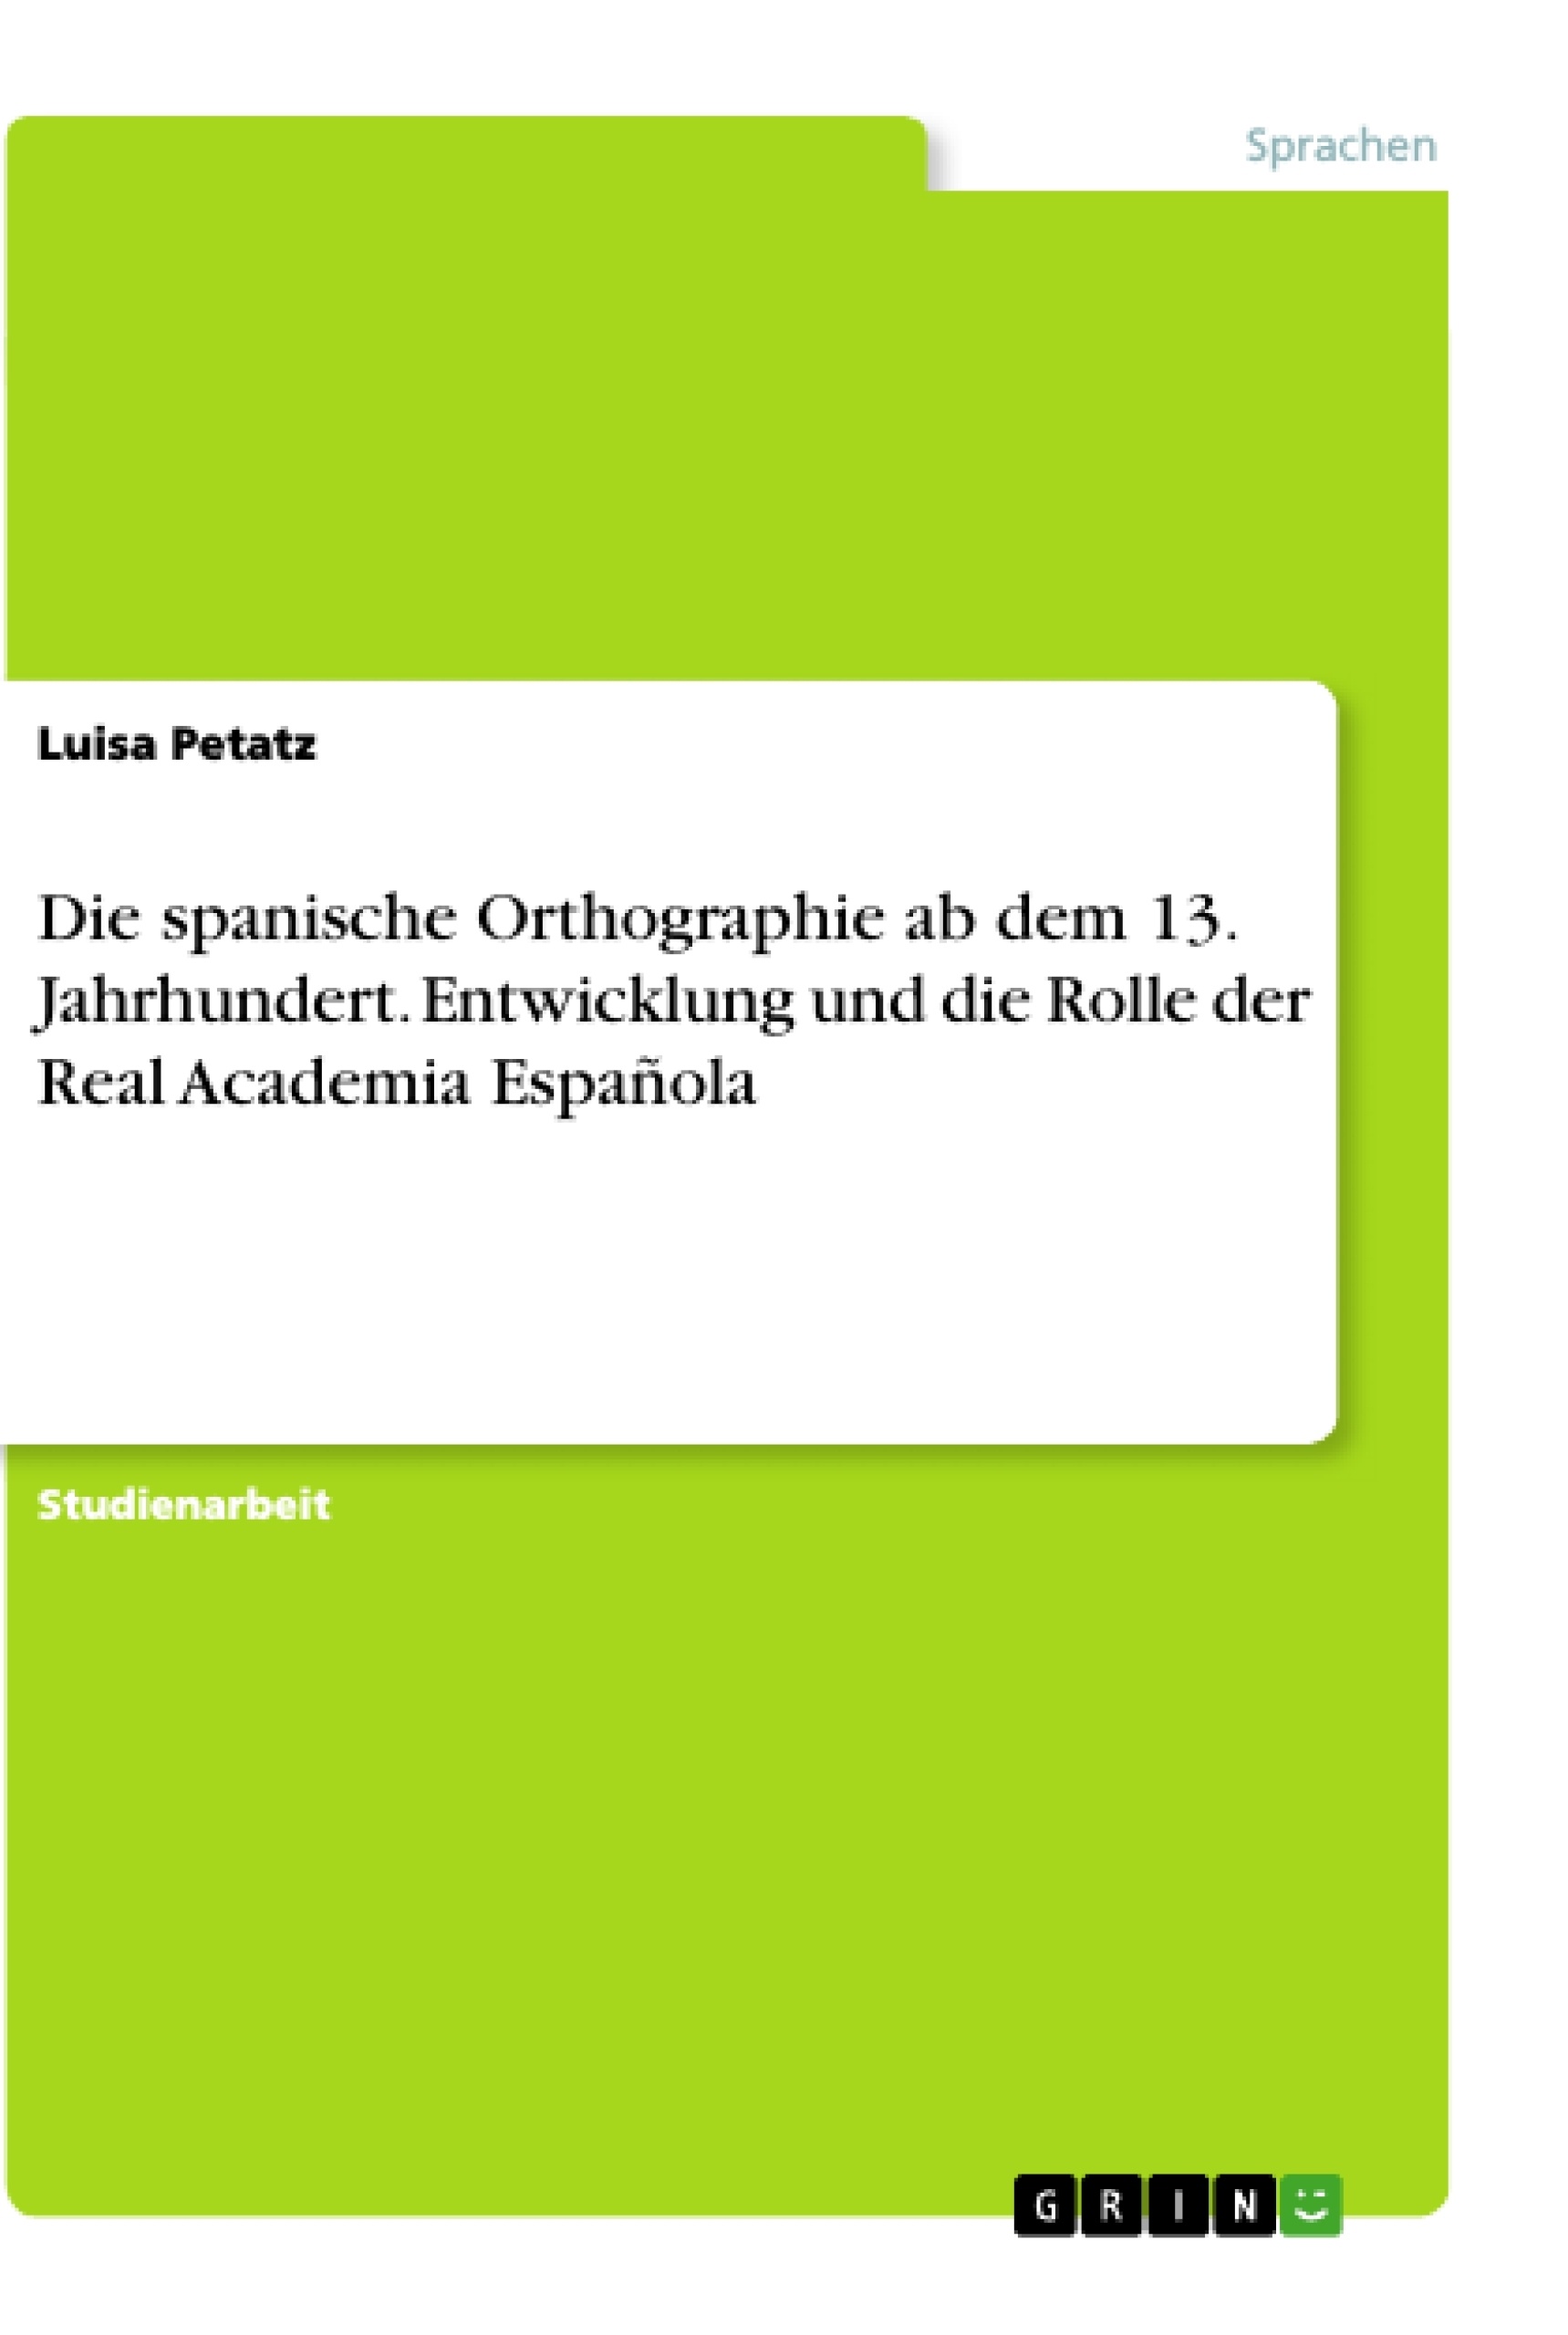 Título: Die spanische Orthographie ab dem 13. Jahrhundert. Entwicklung und die Rolle der Real Academia Española